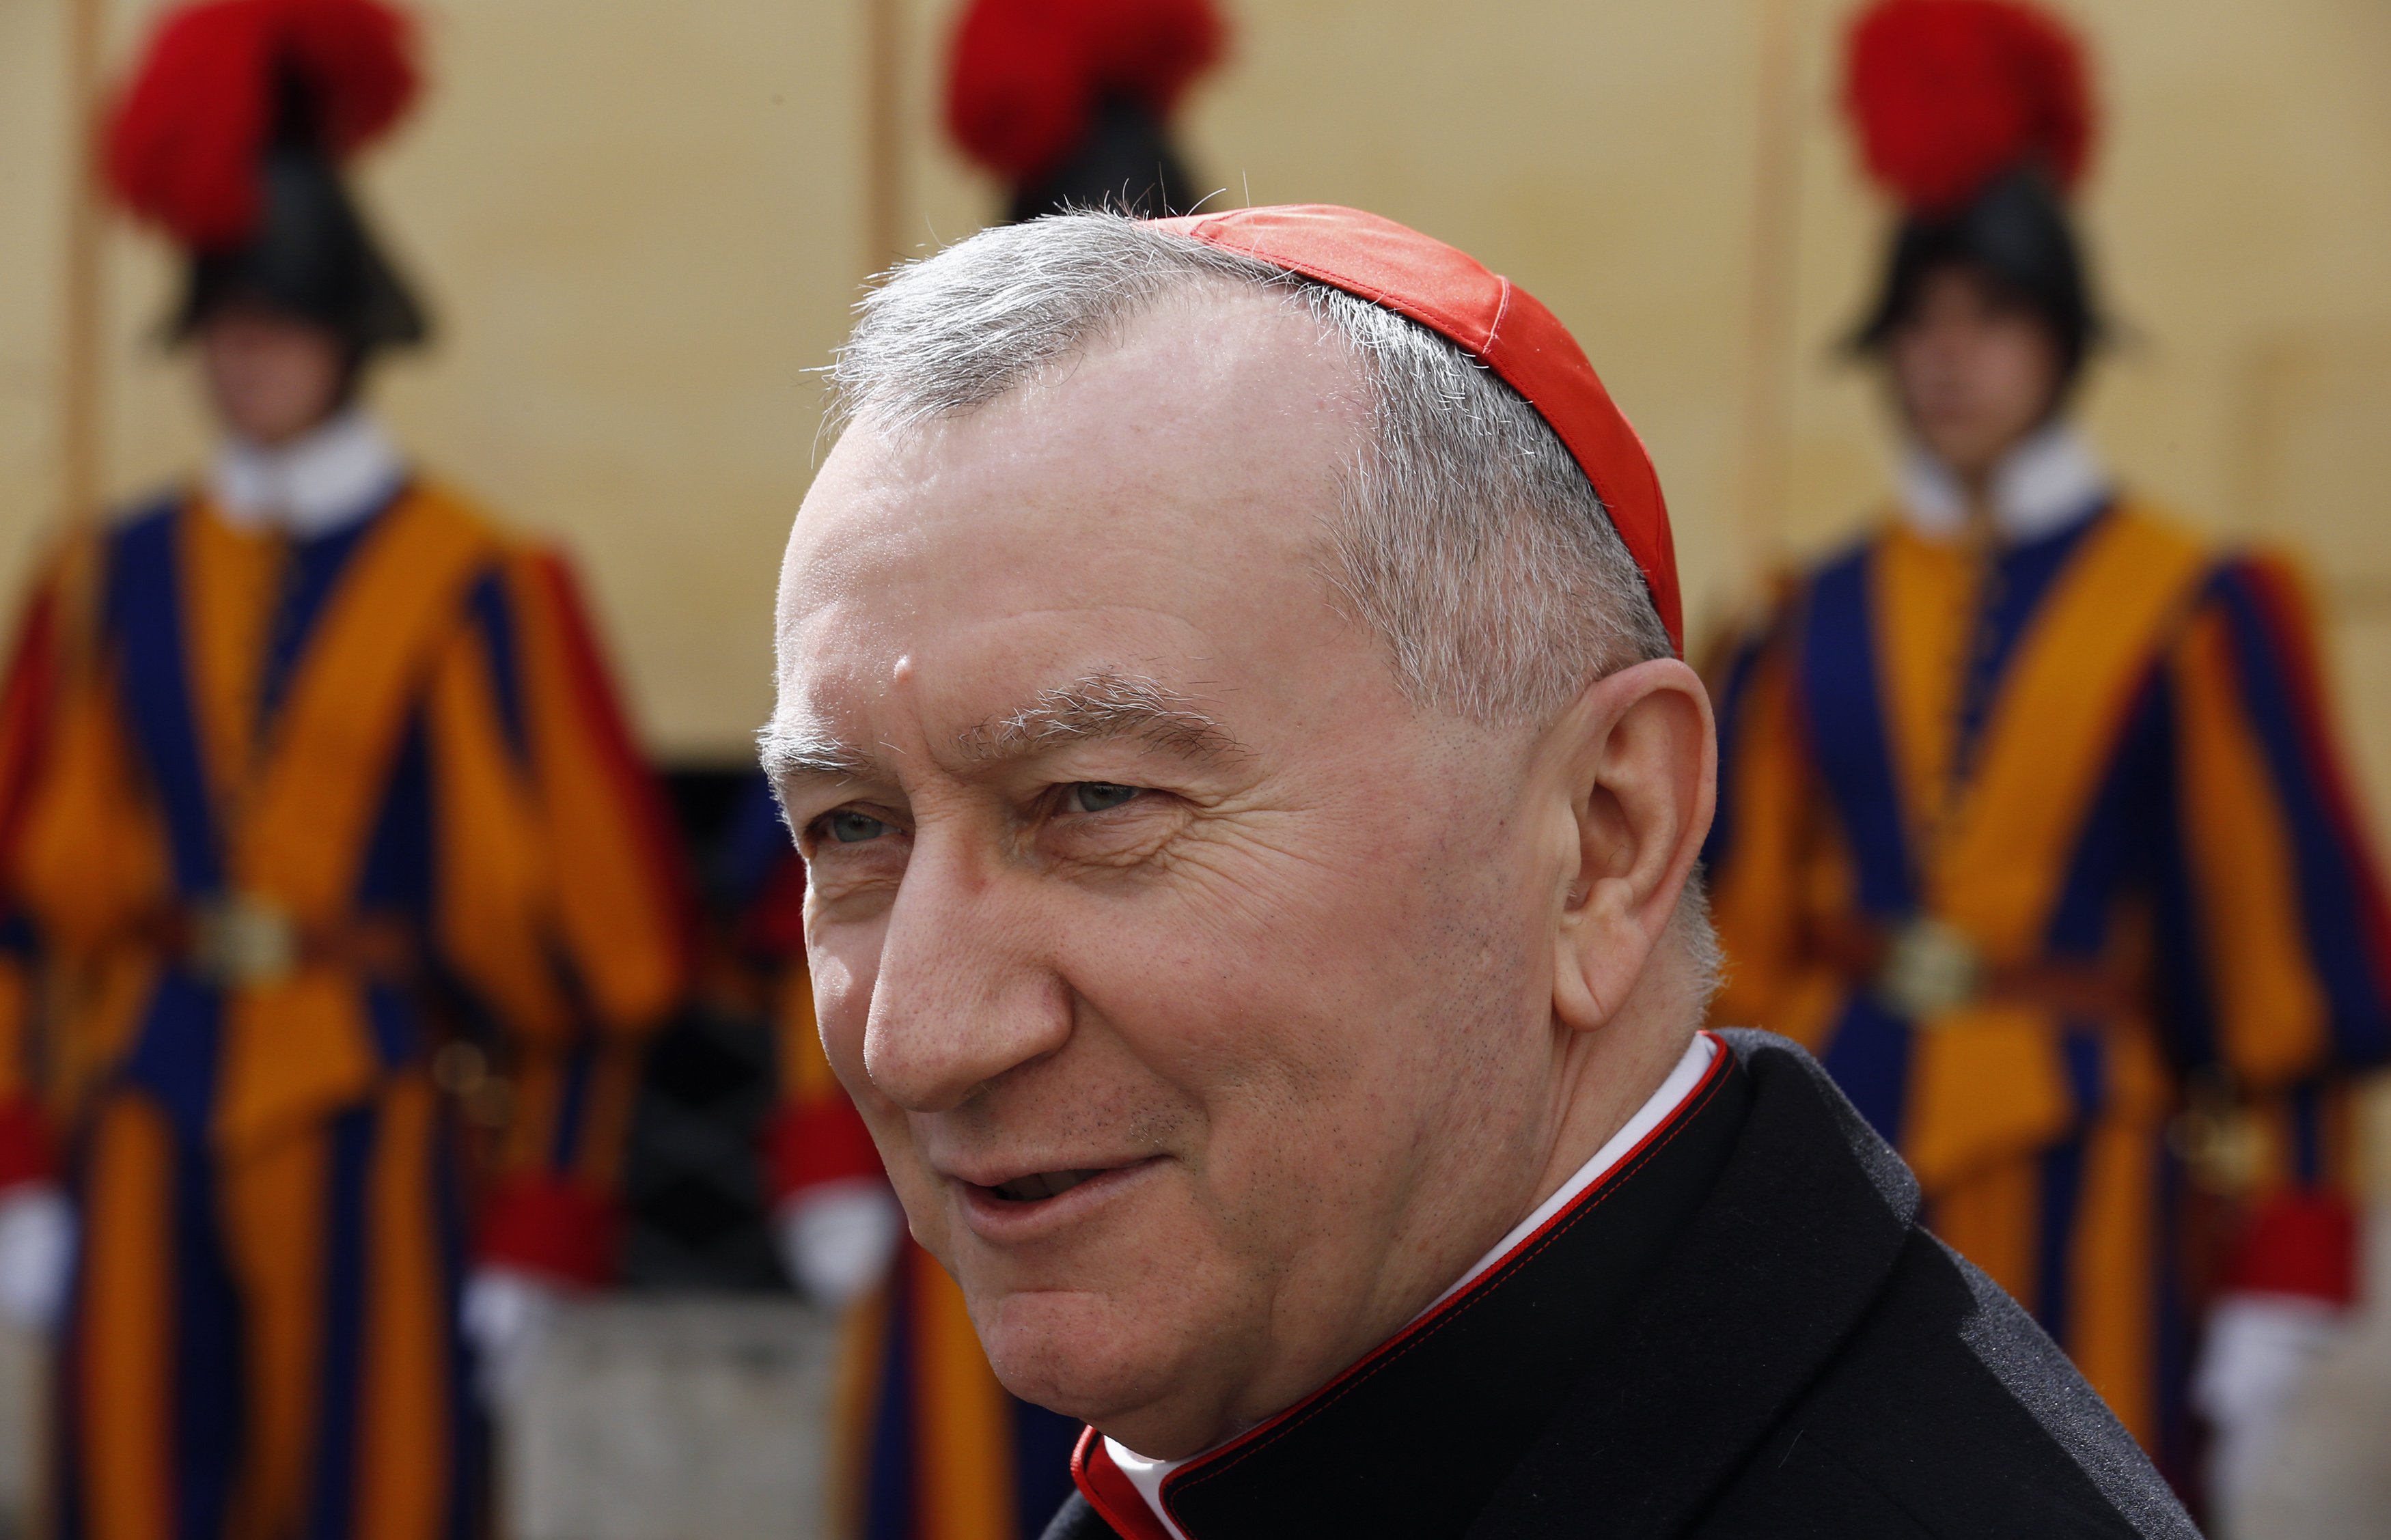 El Cardenal Pietro Parolin asistirá a firma de paz en Colombia